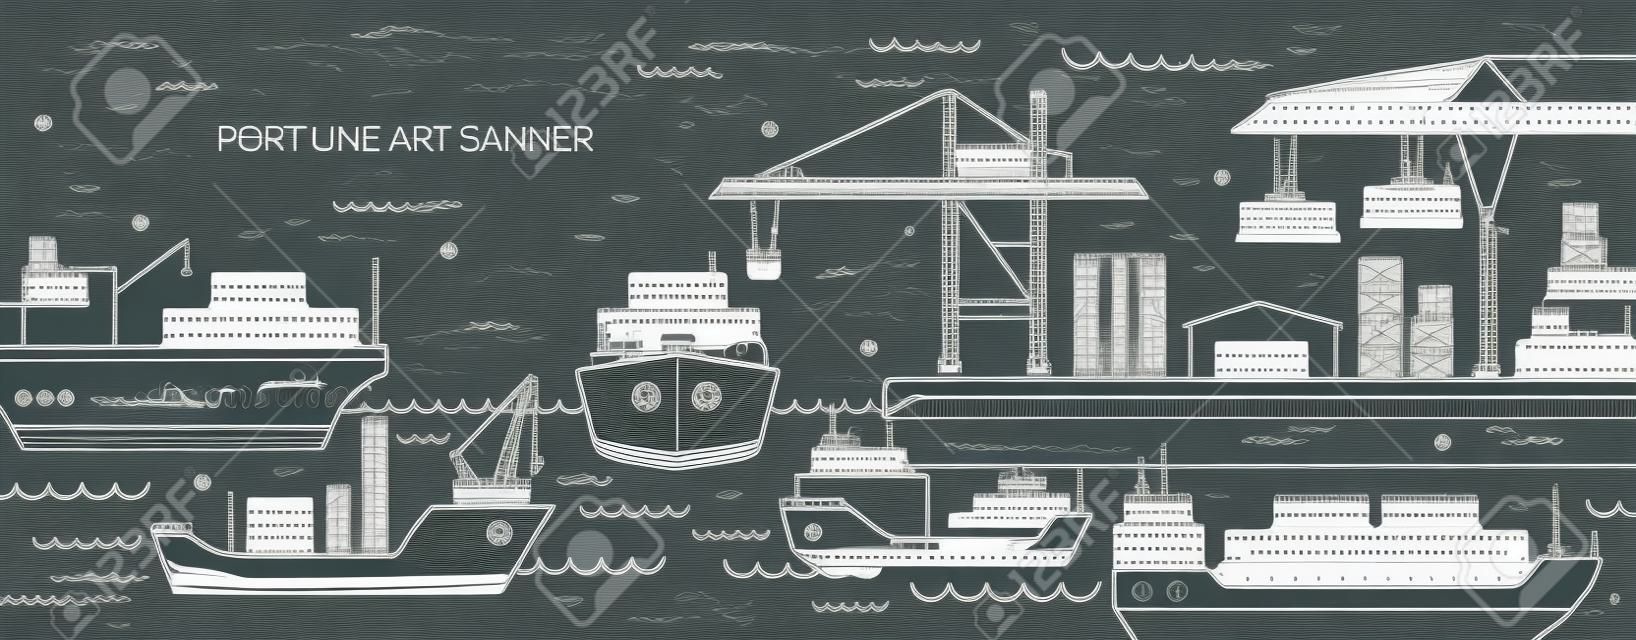 Horizontales Banner mit Seehafen, Seefrachtterminal, Frachtschiffen oder Schiffen mit Containern, die mit Höhenlinien gezeichnet sind. Seeverkehr. Monochrome Vektorillustration im linearen Stil